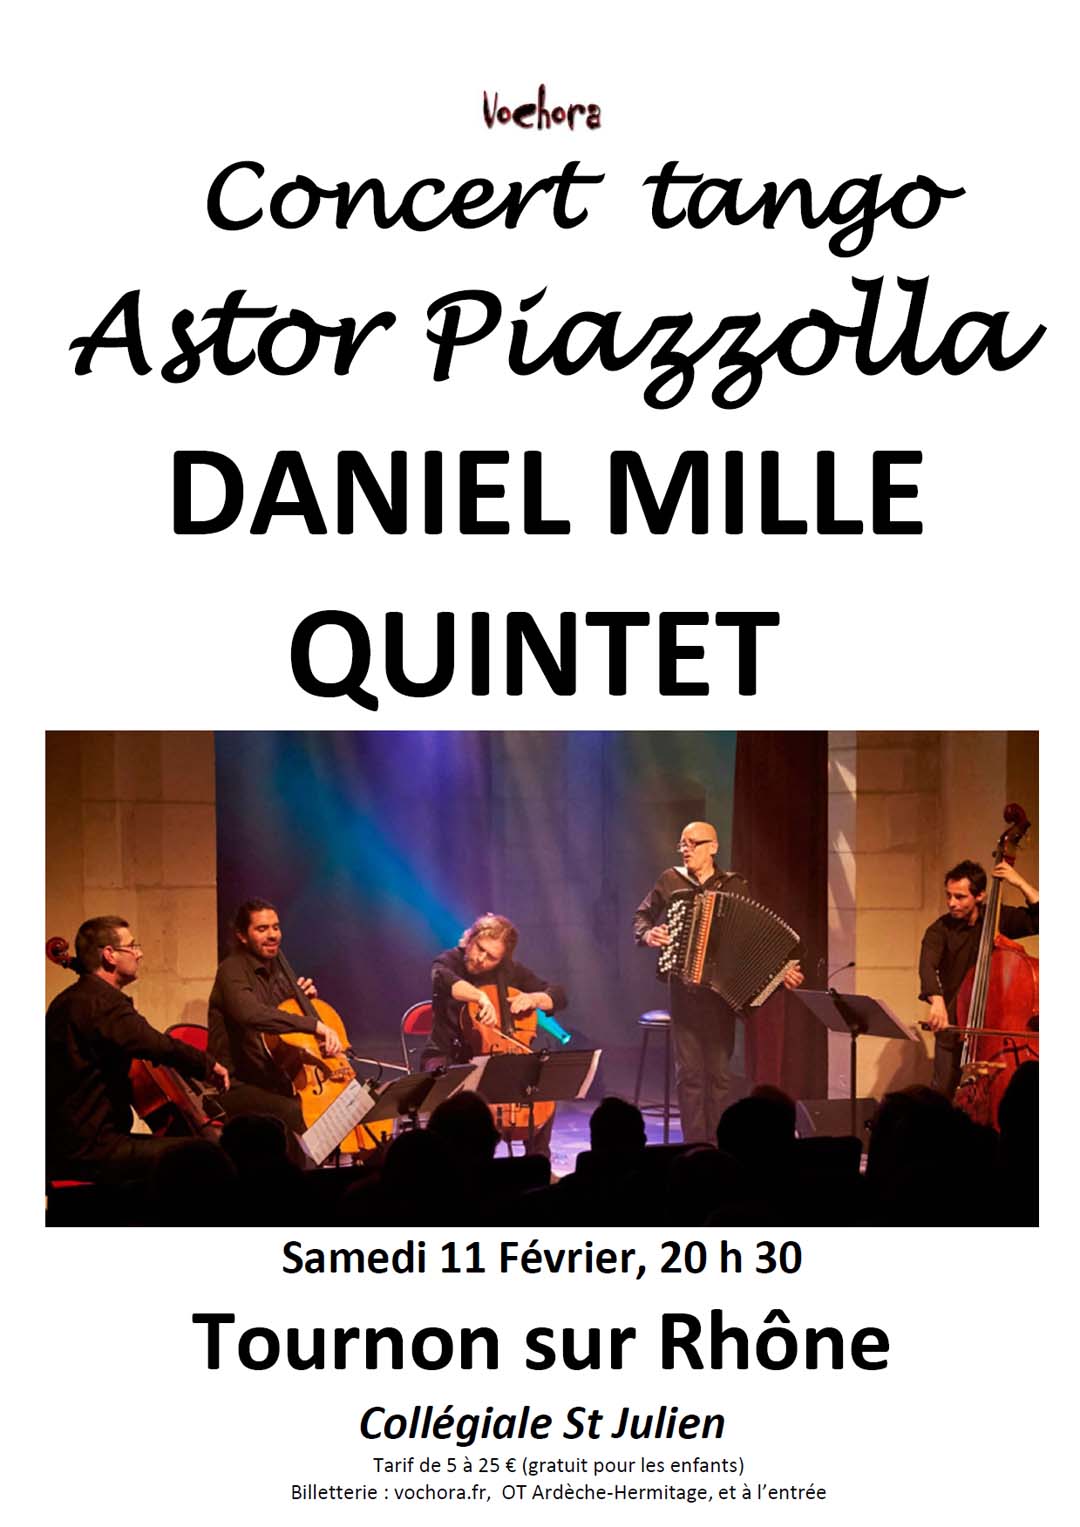 CONCERT VOCHORA : Concert tango Astor Piazzolla - Daniel Mille Quintet. Samedi 11 février 2023. Collégiale St JULIEN Tournon-sur-Rhône.